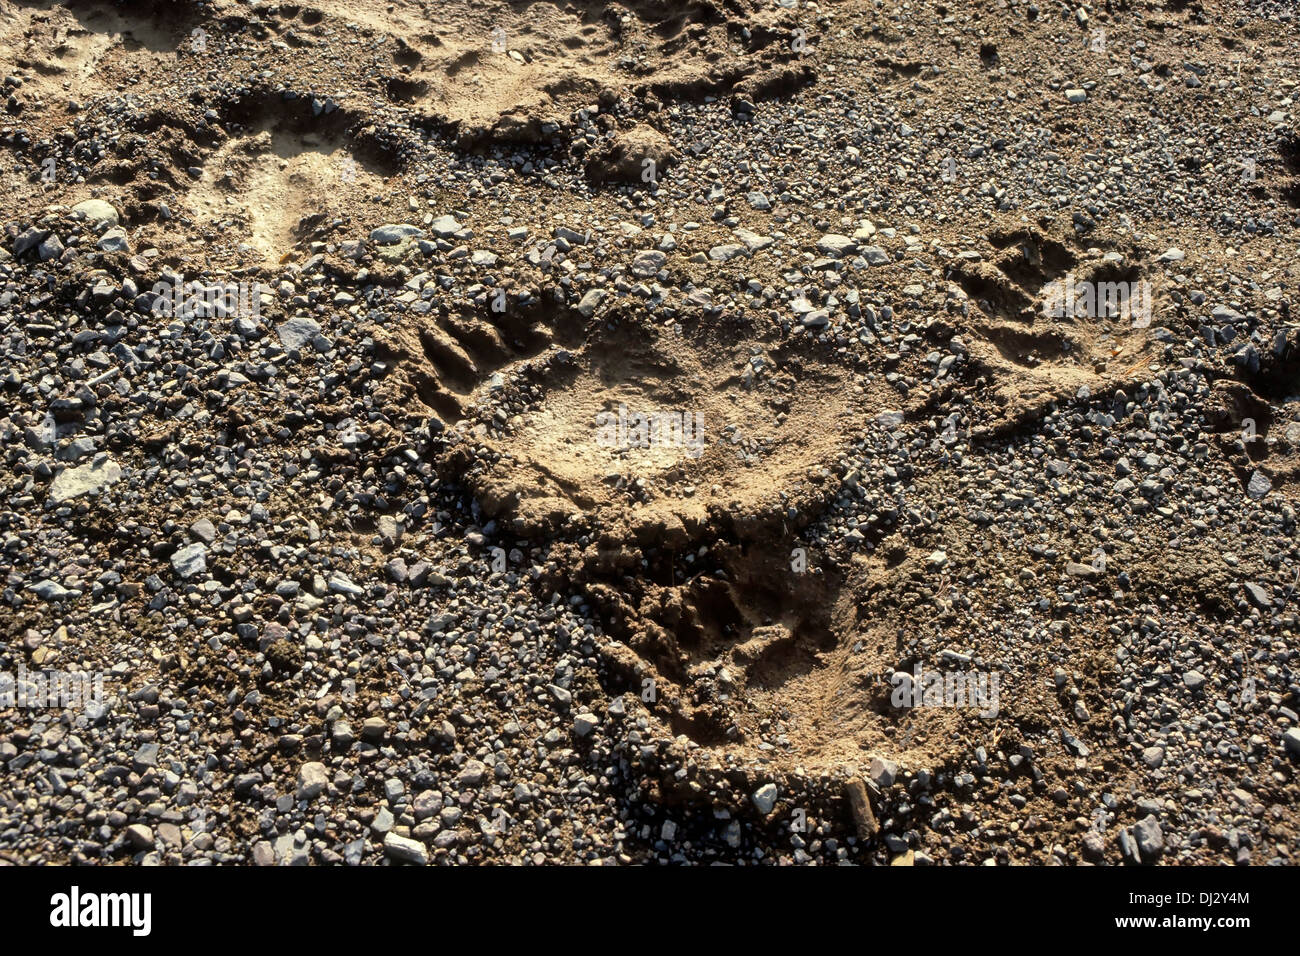 Footprint of the brown bear, brown bear (Ursus arctos), Fußspur des Braunbärs, Braunbär (Ursus arctos) Stock Photo